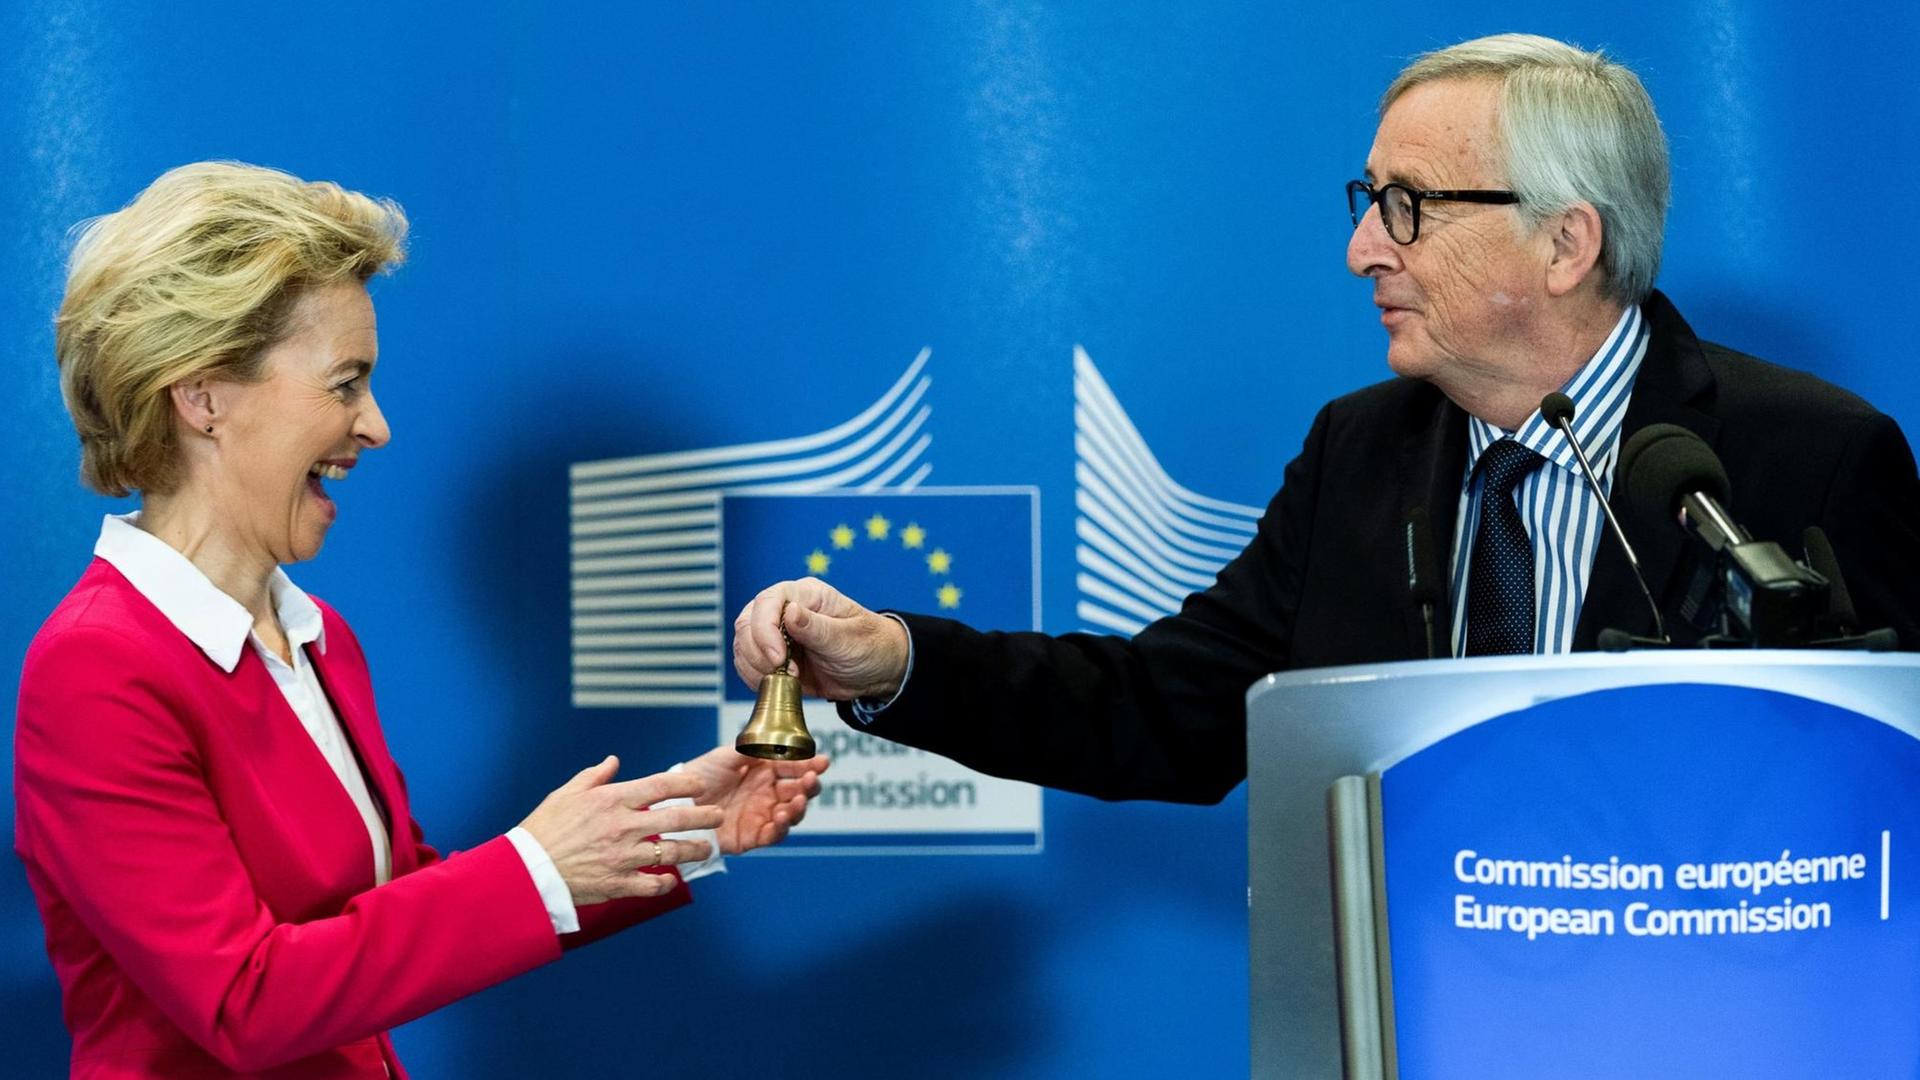 Der scheidende Präsident Jean-Claude Juncker (r.) überreicht der neuen Präsidentin der Europäischen Kommission Ursula von der Leyen eine Glocke.